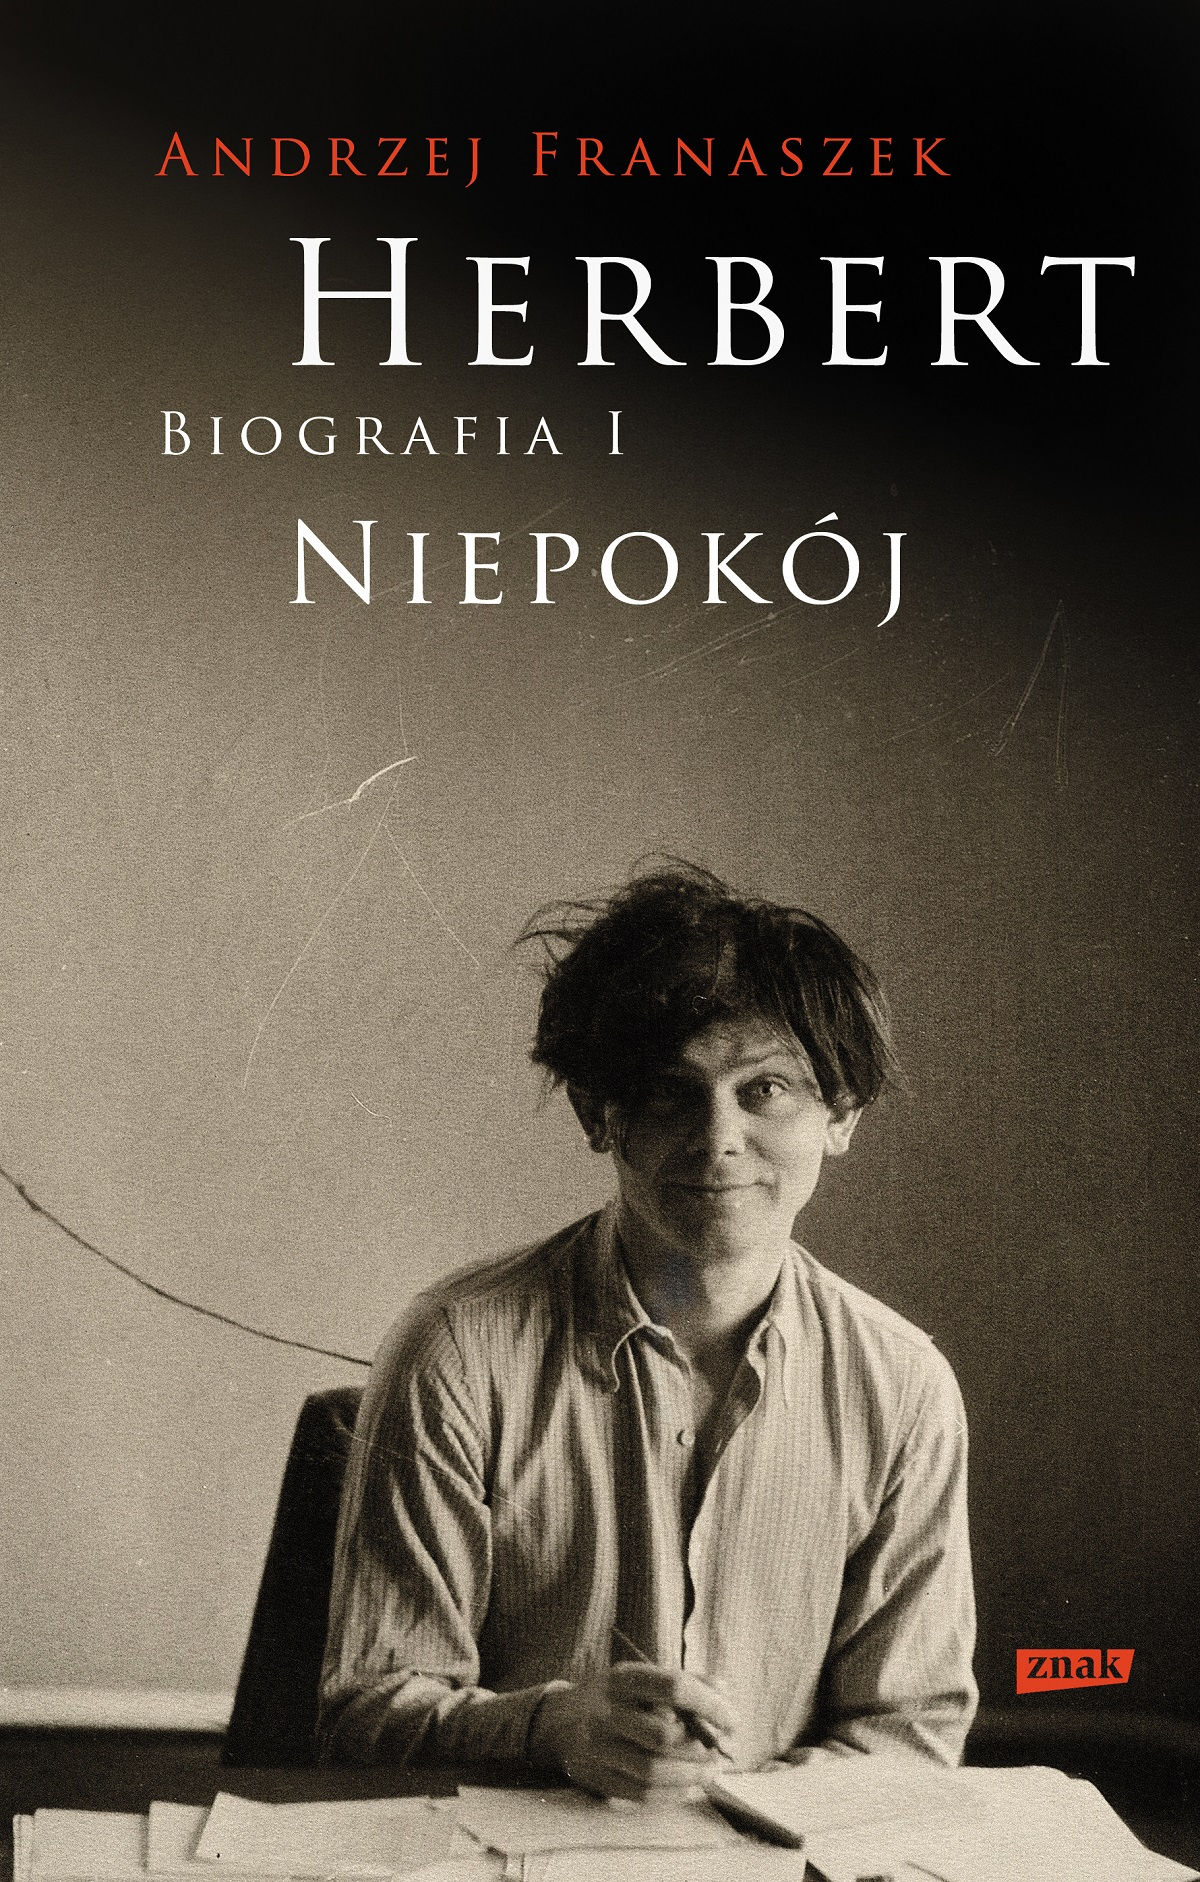 „Herbert. Biografia”, Andrzej Franaszek, Znak (Fot. materiały prasowe)